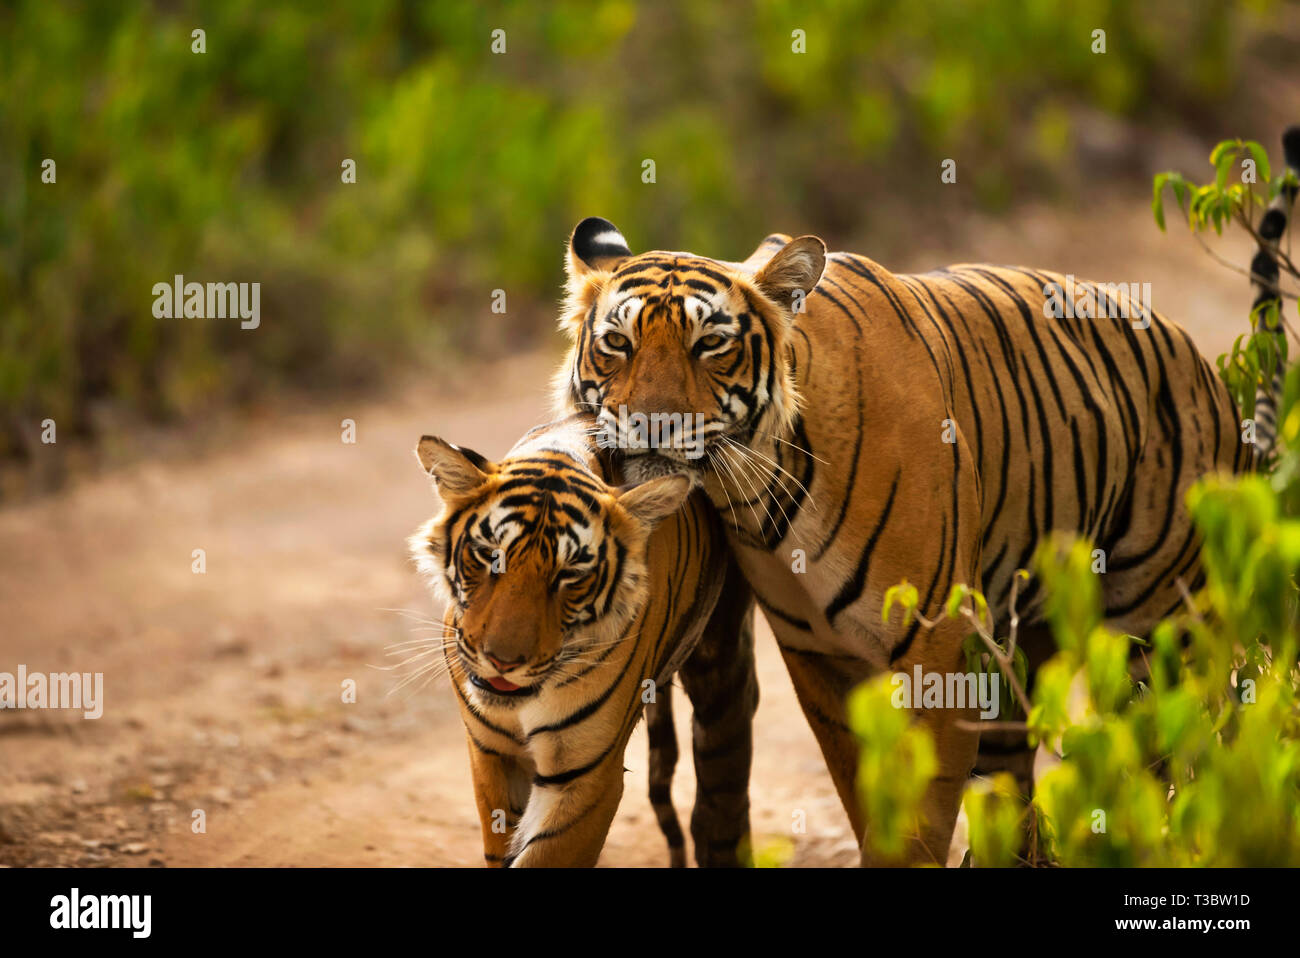 Deux tigres se pelotonnant, Panthera tigris, la Réserve de tigres de Ranthambore, Rajasthan, Inde. Banque D'Images